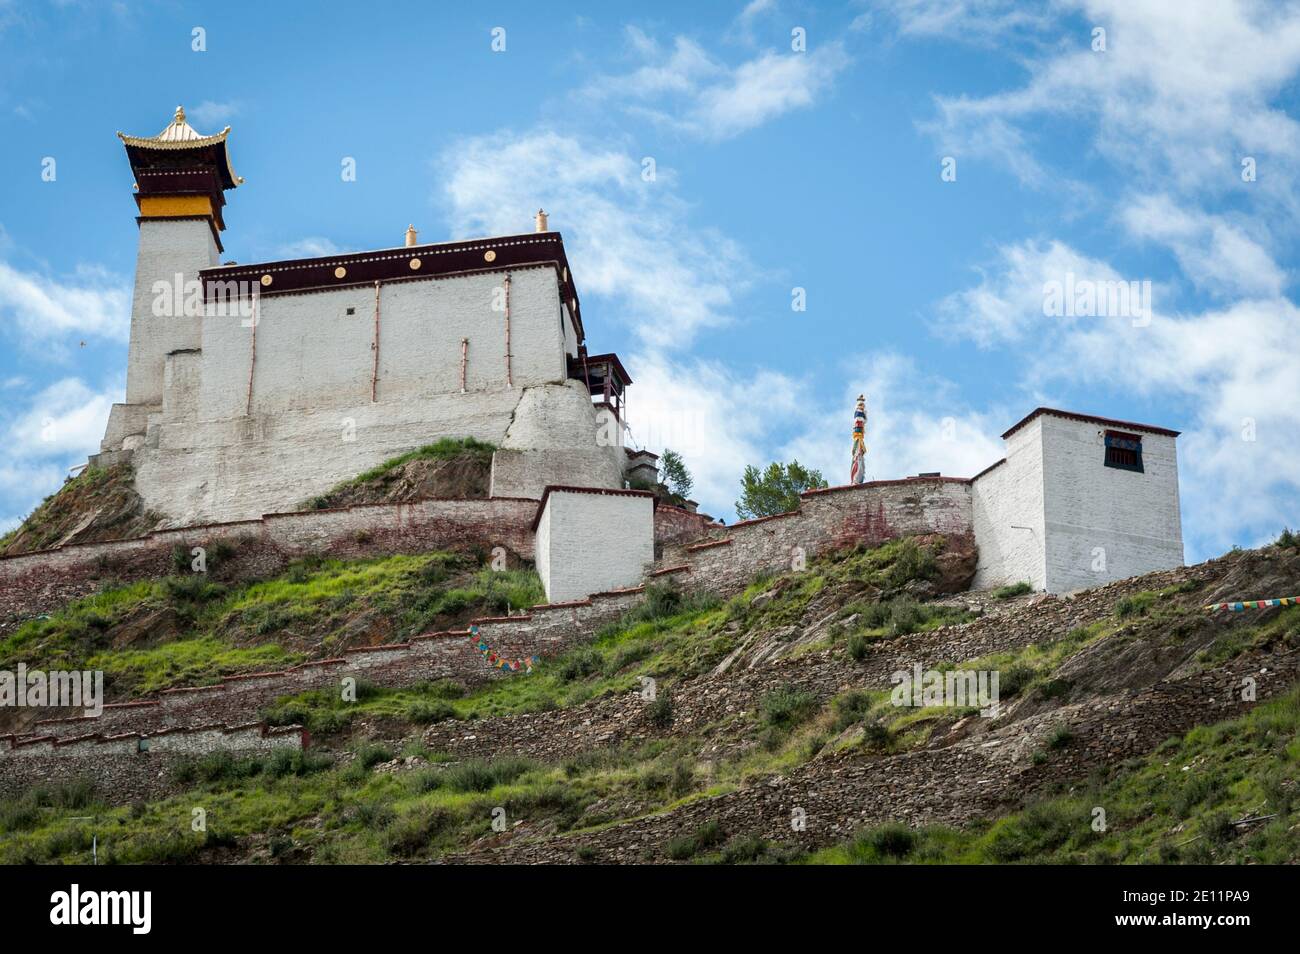 Le palais de Yungbulakang, également connu sous le nom de Yumbu Lakhang, est un ancien Structure dans la vallée de Yarlung, à proximité de Tsetang Ville - Tibet Chine Banque D'Images